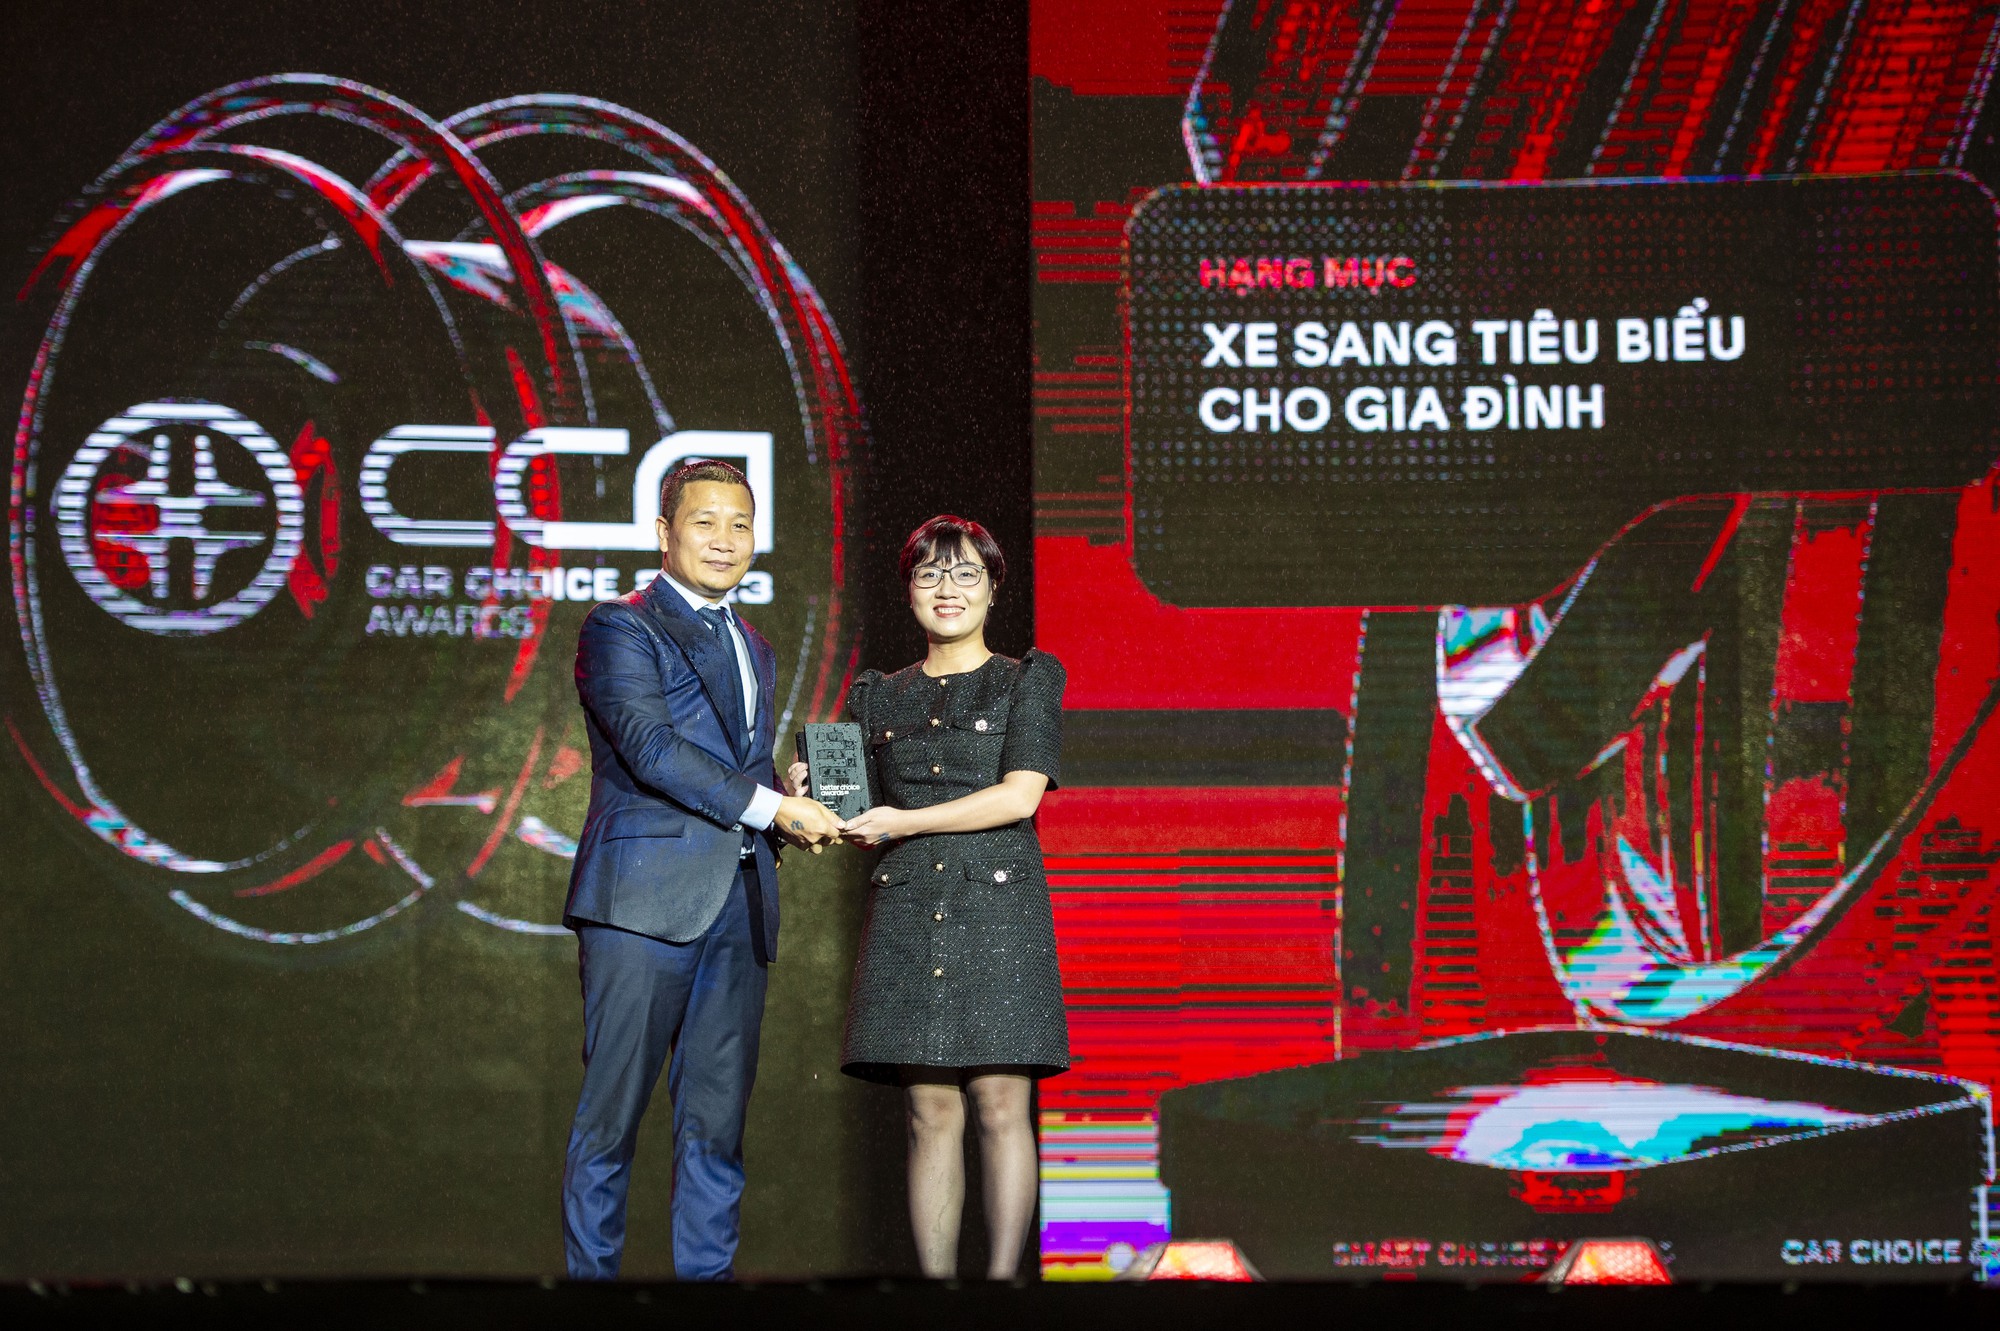 Volvo XC90 lần thứ 2 chiến thắng Car Choice Awards, trở thành &quot;Xe sang tiêu biểu cho gia đình&quot; - Ảnh 1.